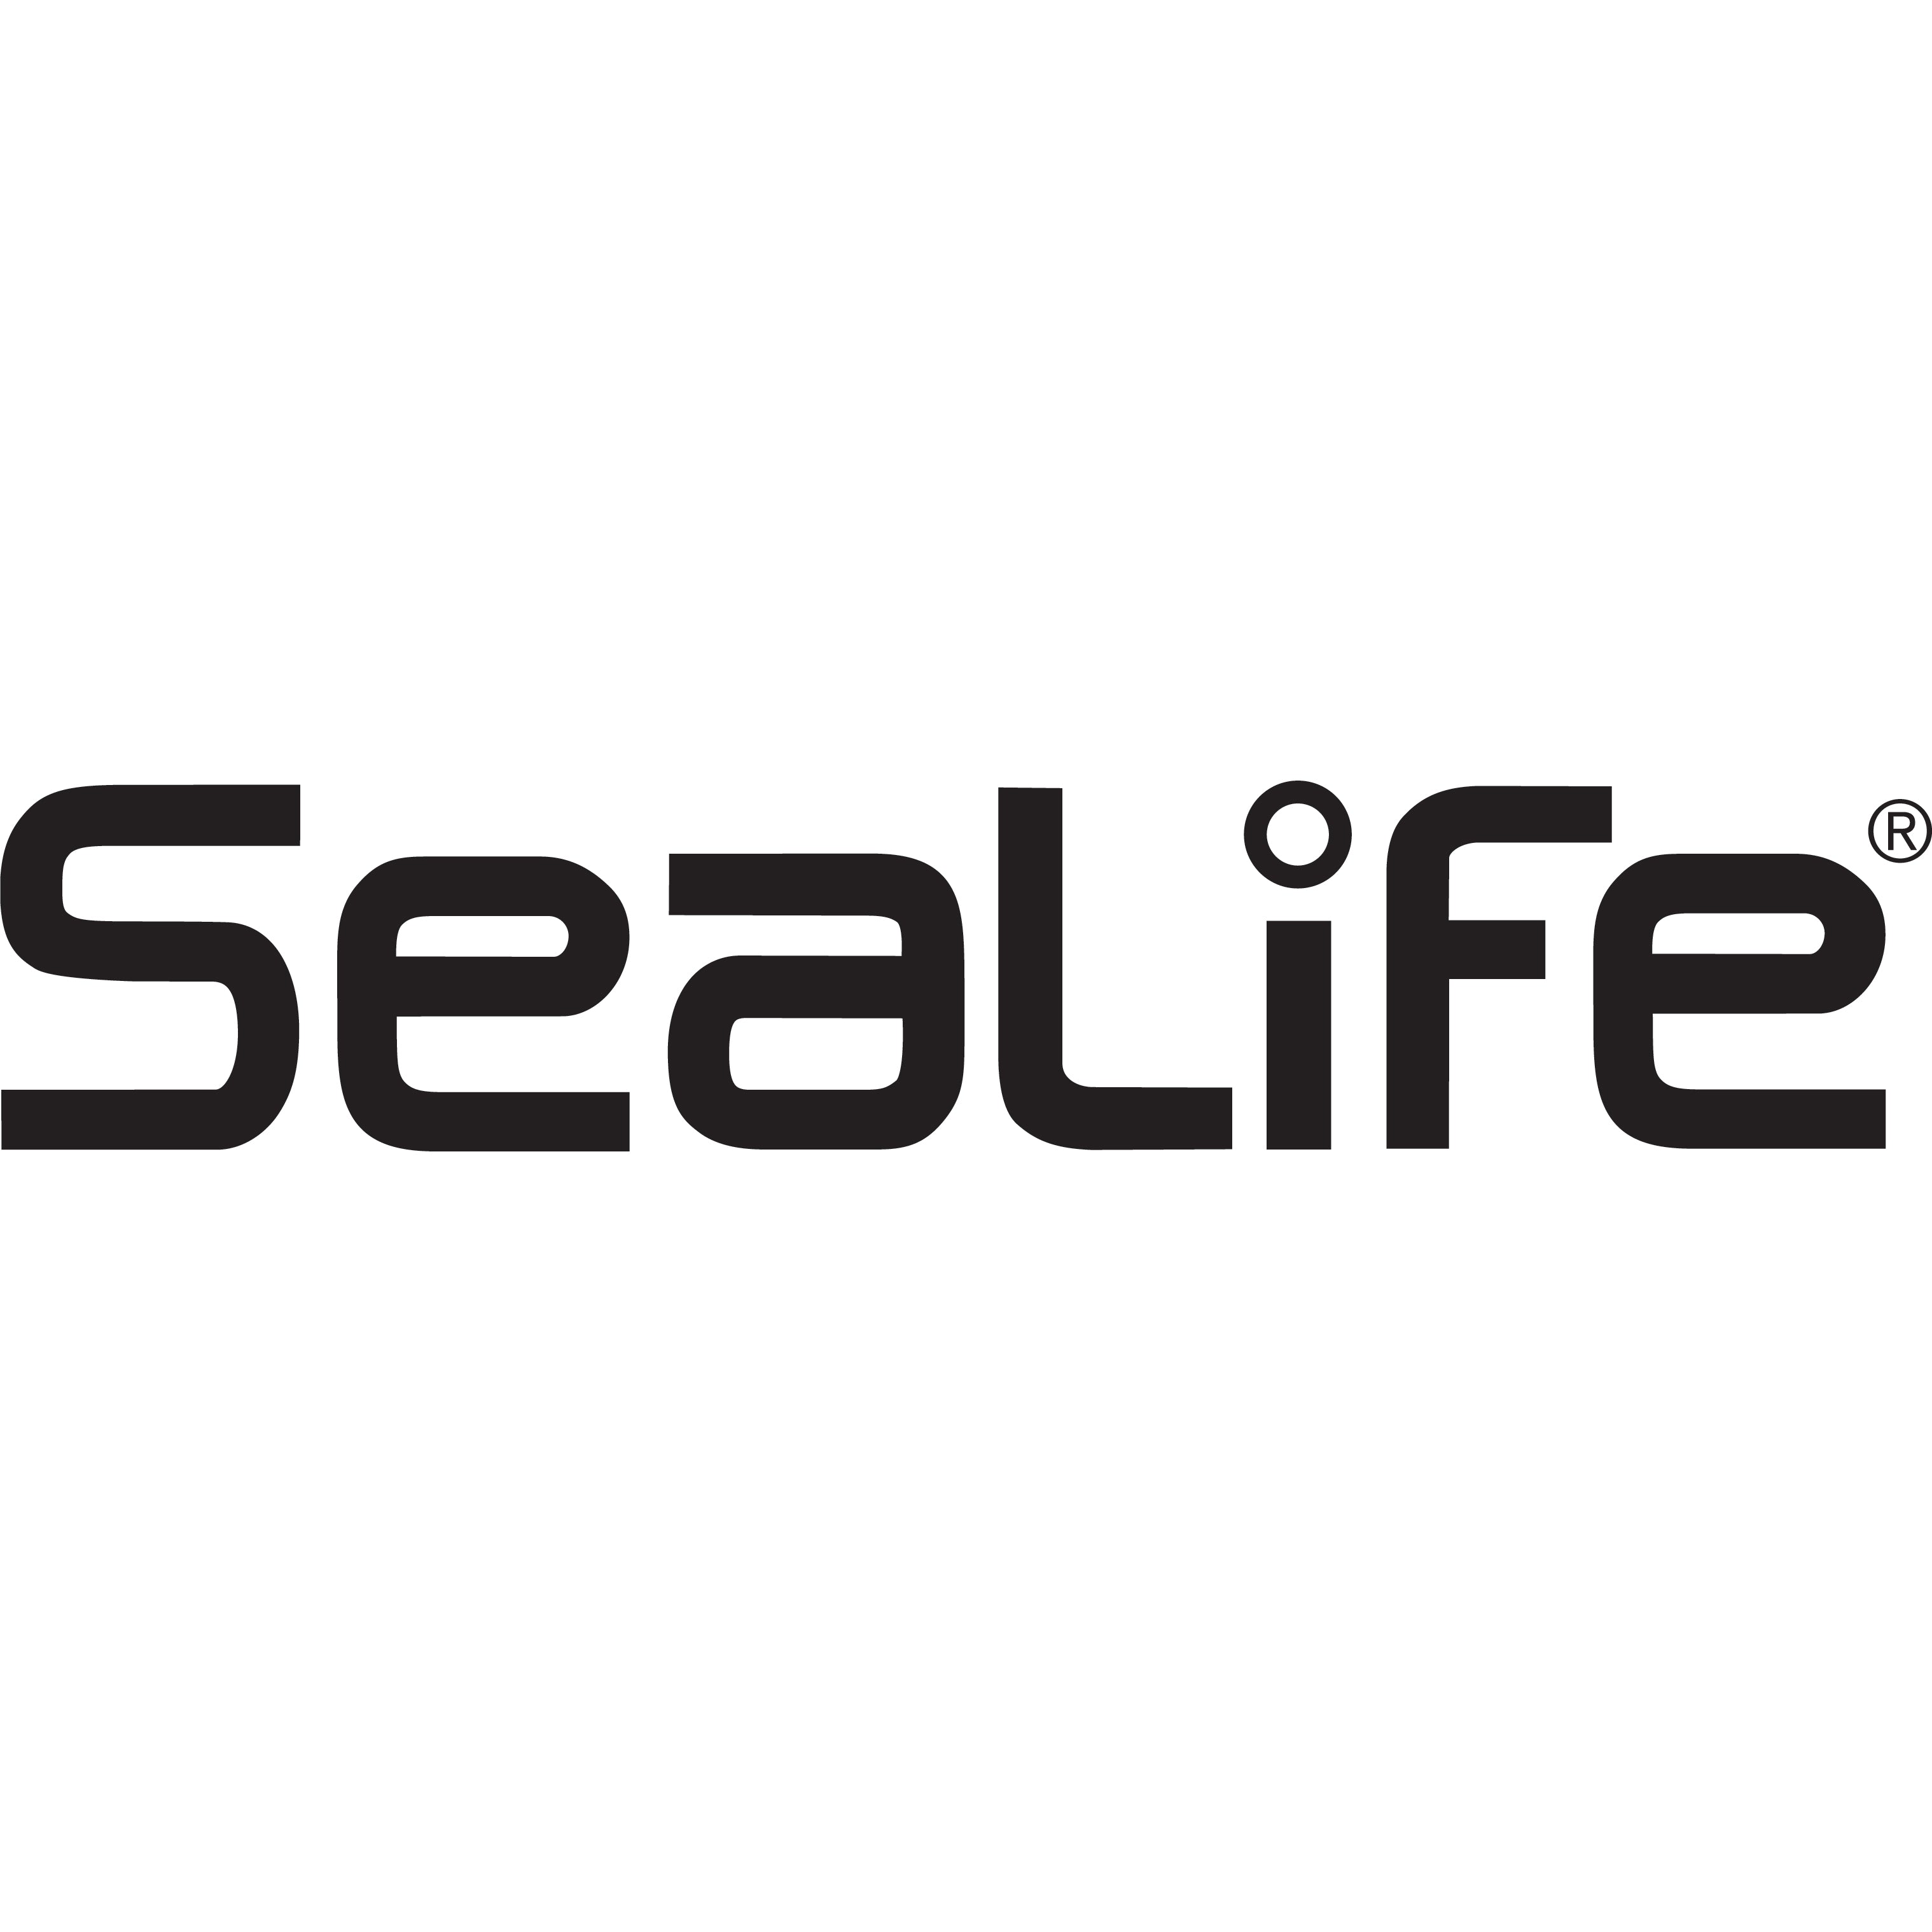 SeaLife – DiveCatalog.com